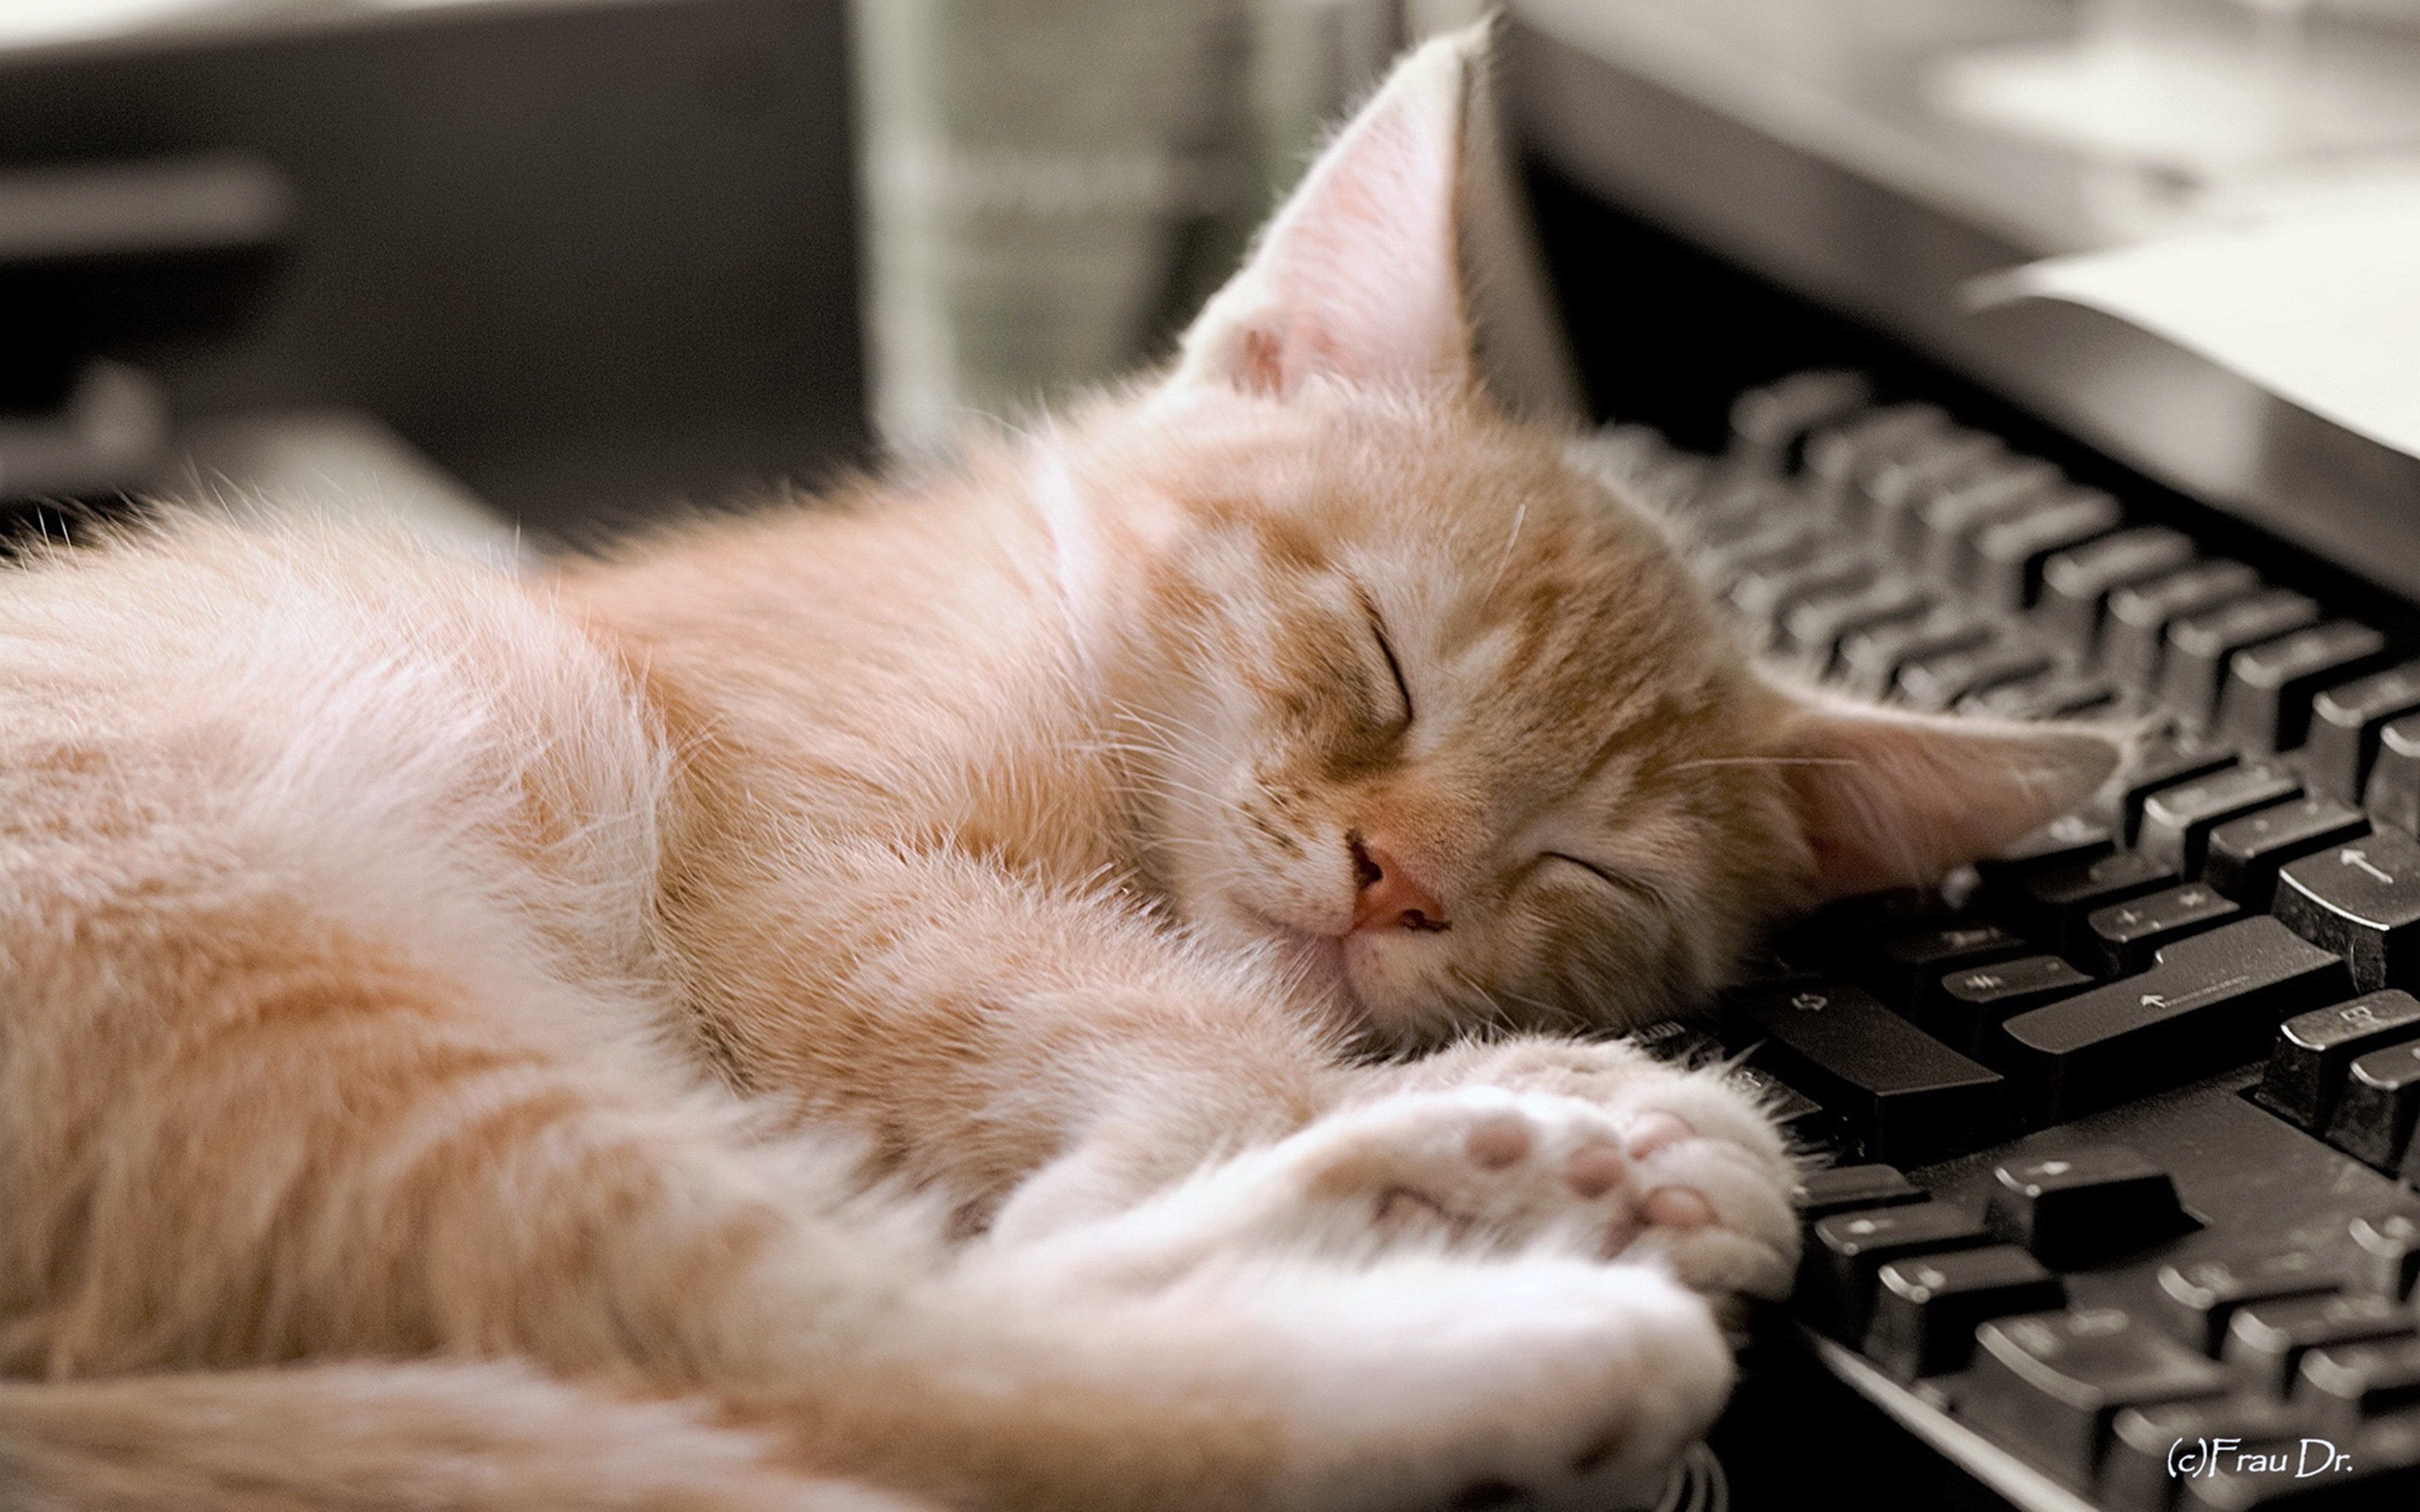 animals, cats, computers, keyboard, mood, pets, sleep